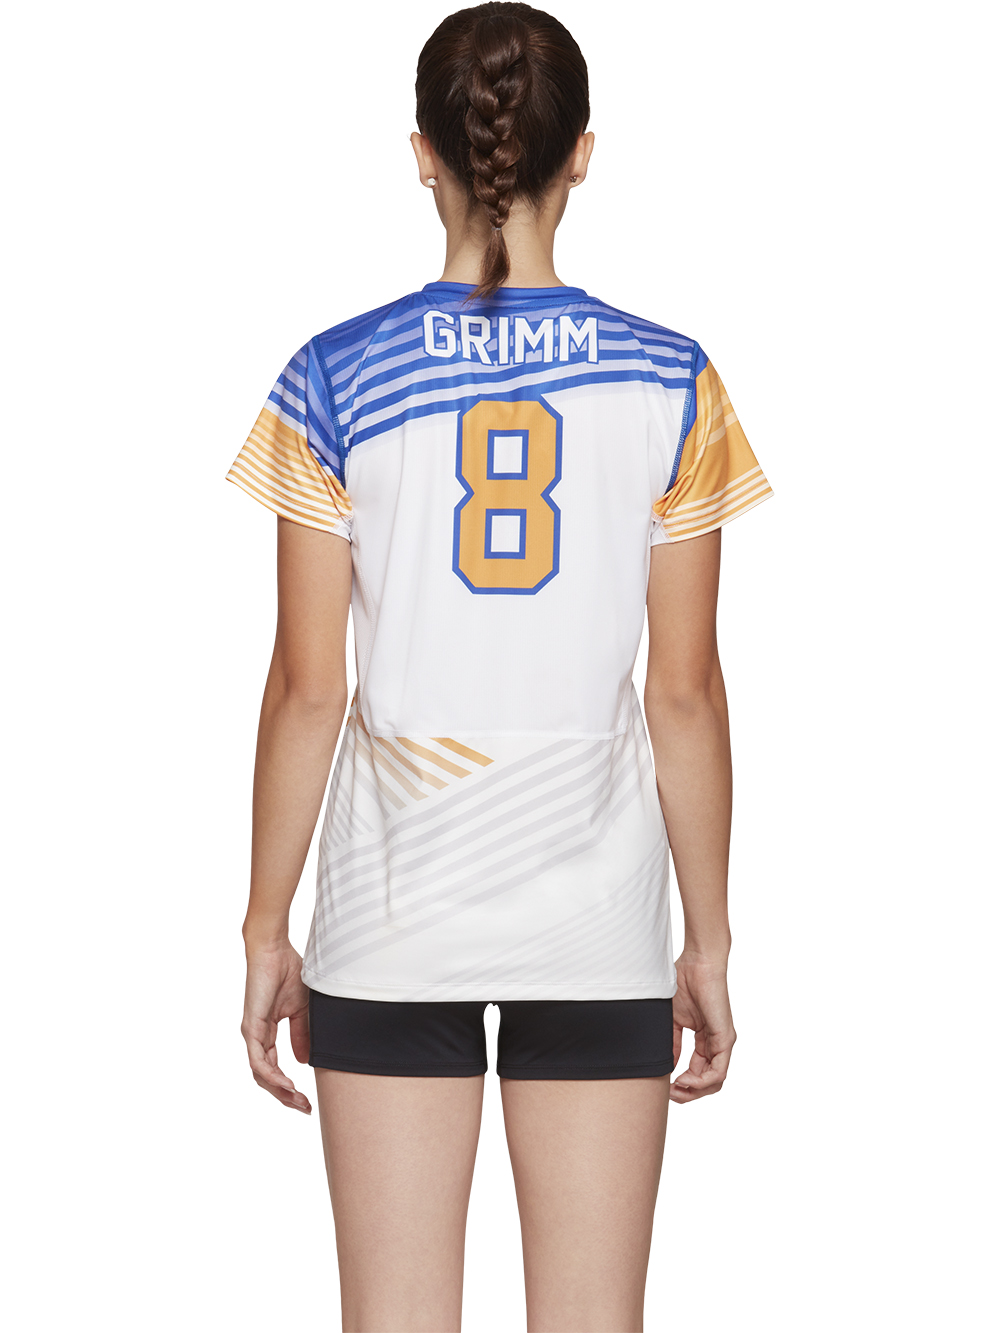 asics custom volleyball jerseys